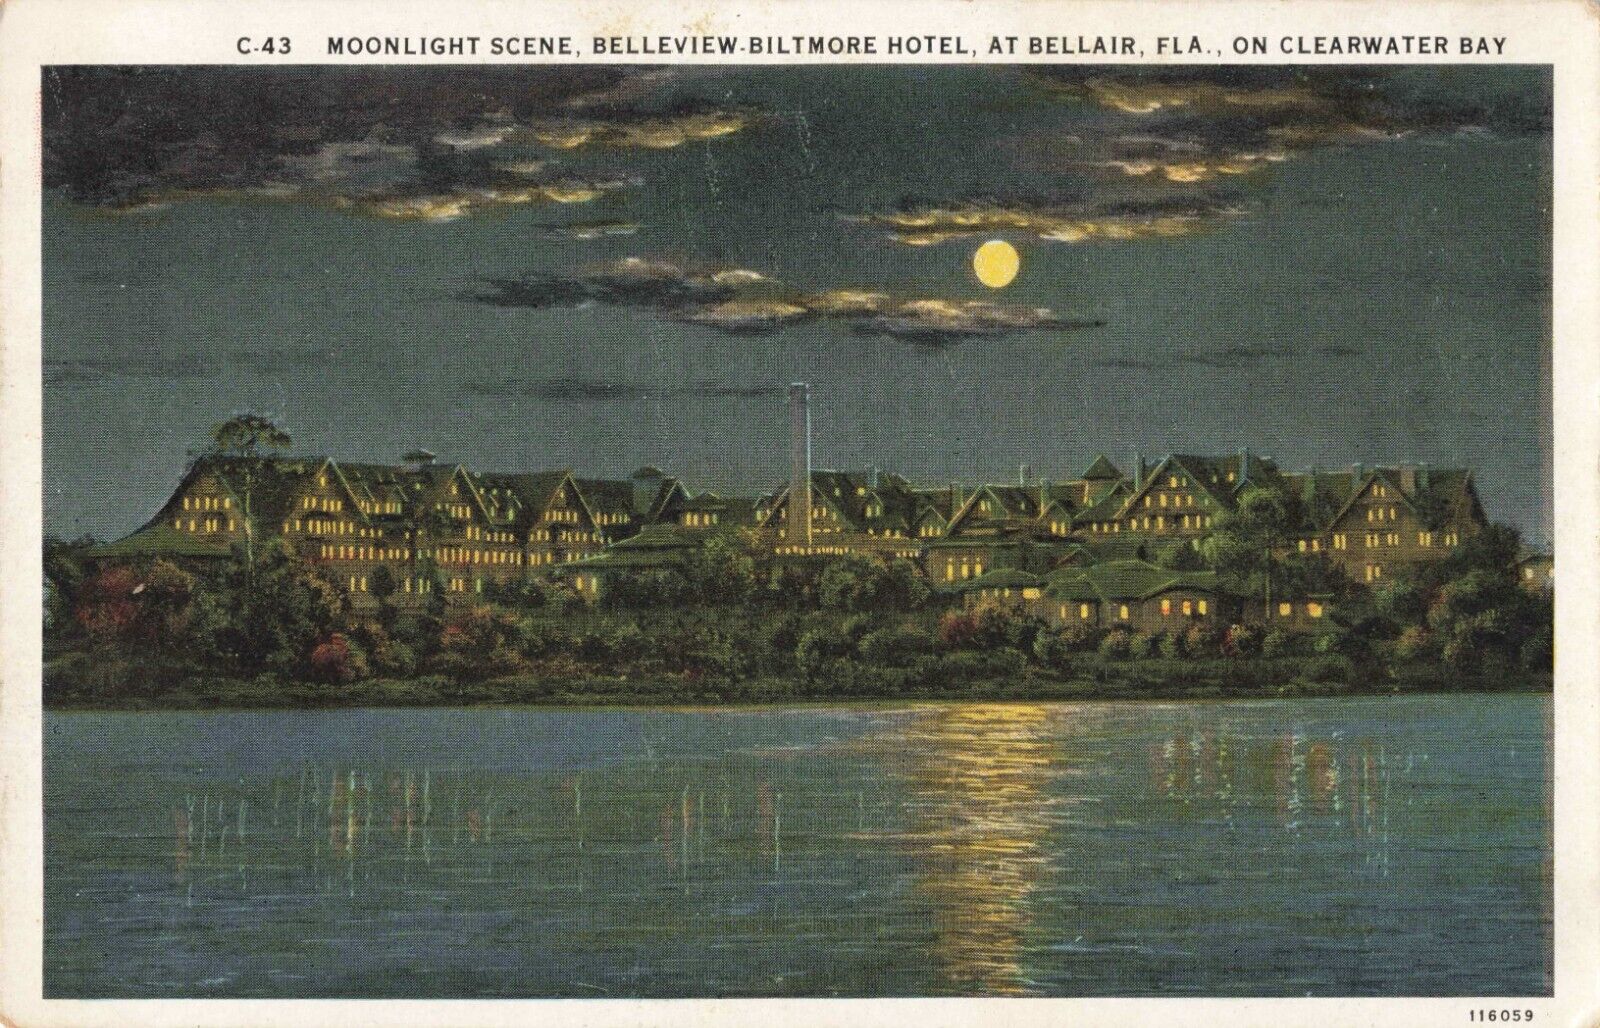 Moonlight Scene Belleview Biltmore Hotel Belleair Florida Clearwater Bay 1934 PC